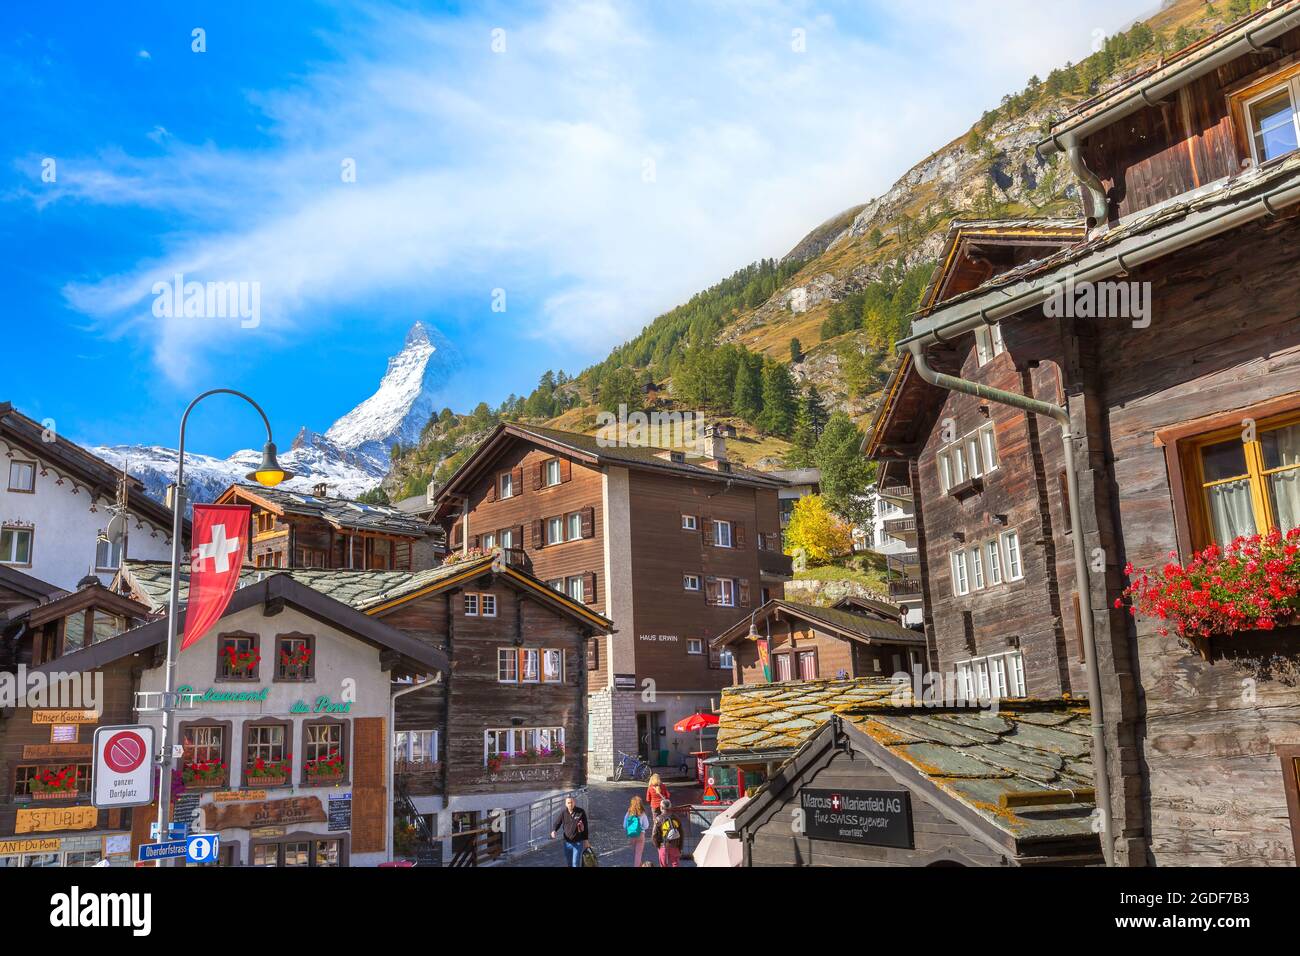 Zermatt, Svizzera - 7 ottobre 2019: Vista sulla strada della città in autunno nella famosa stazione sciistica svizzera, Monte neve Cervino, case tradizionali Foto Stock